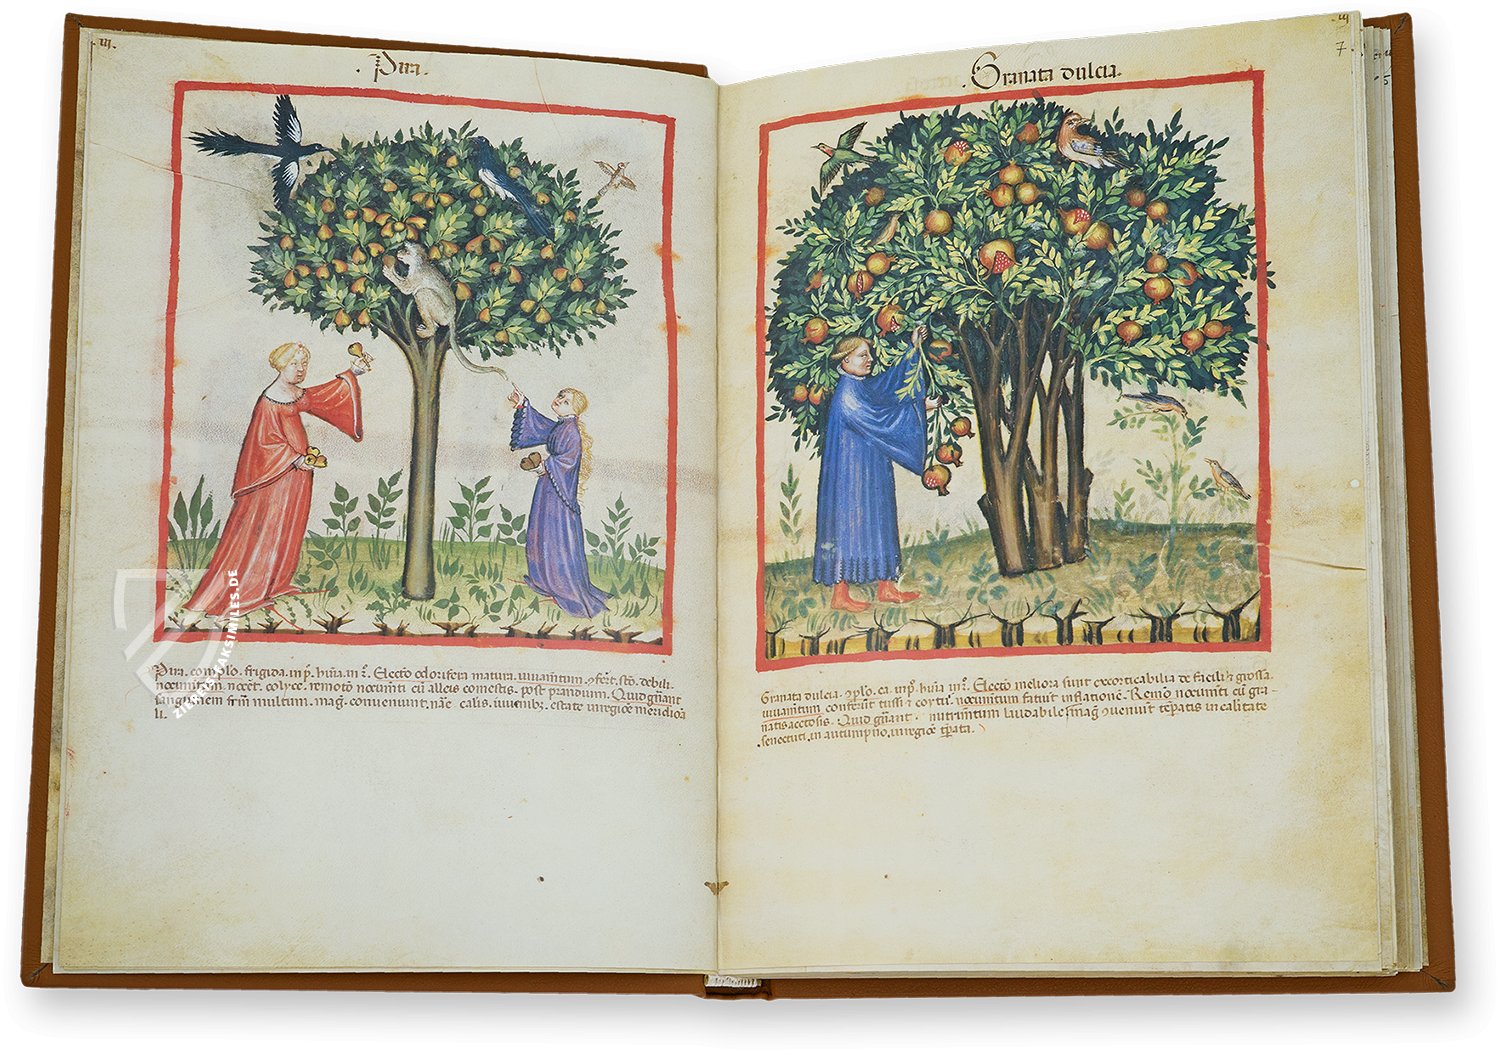 Paradiesische Bilder als Ausdruck aristokratischen Wunschdenkens (Tacuinum Sanitatis in Medicina, Lombardei (Italien) — Ende des 14. Jahrhunderts)